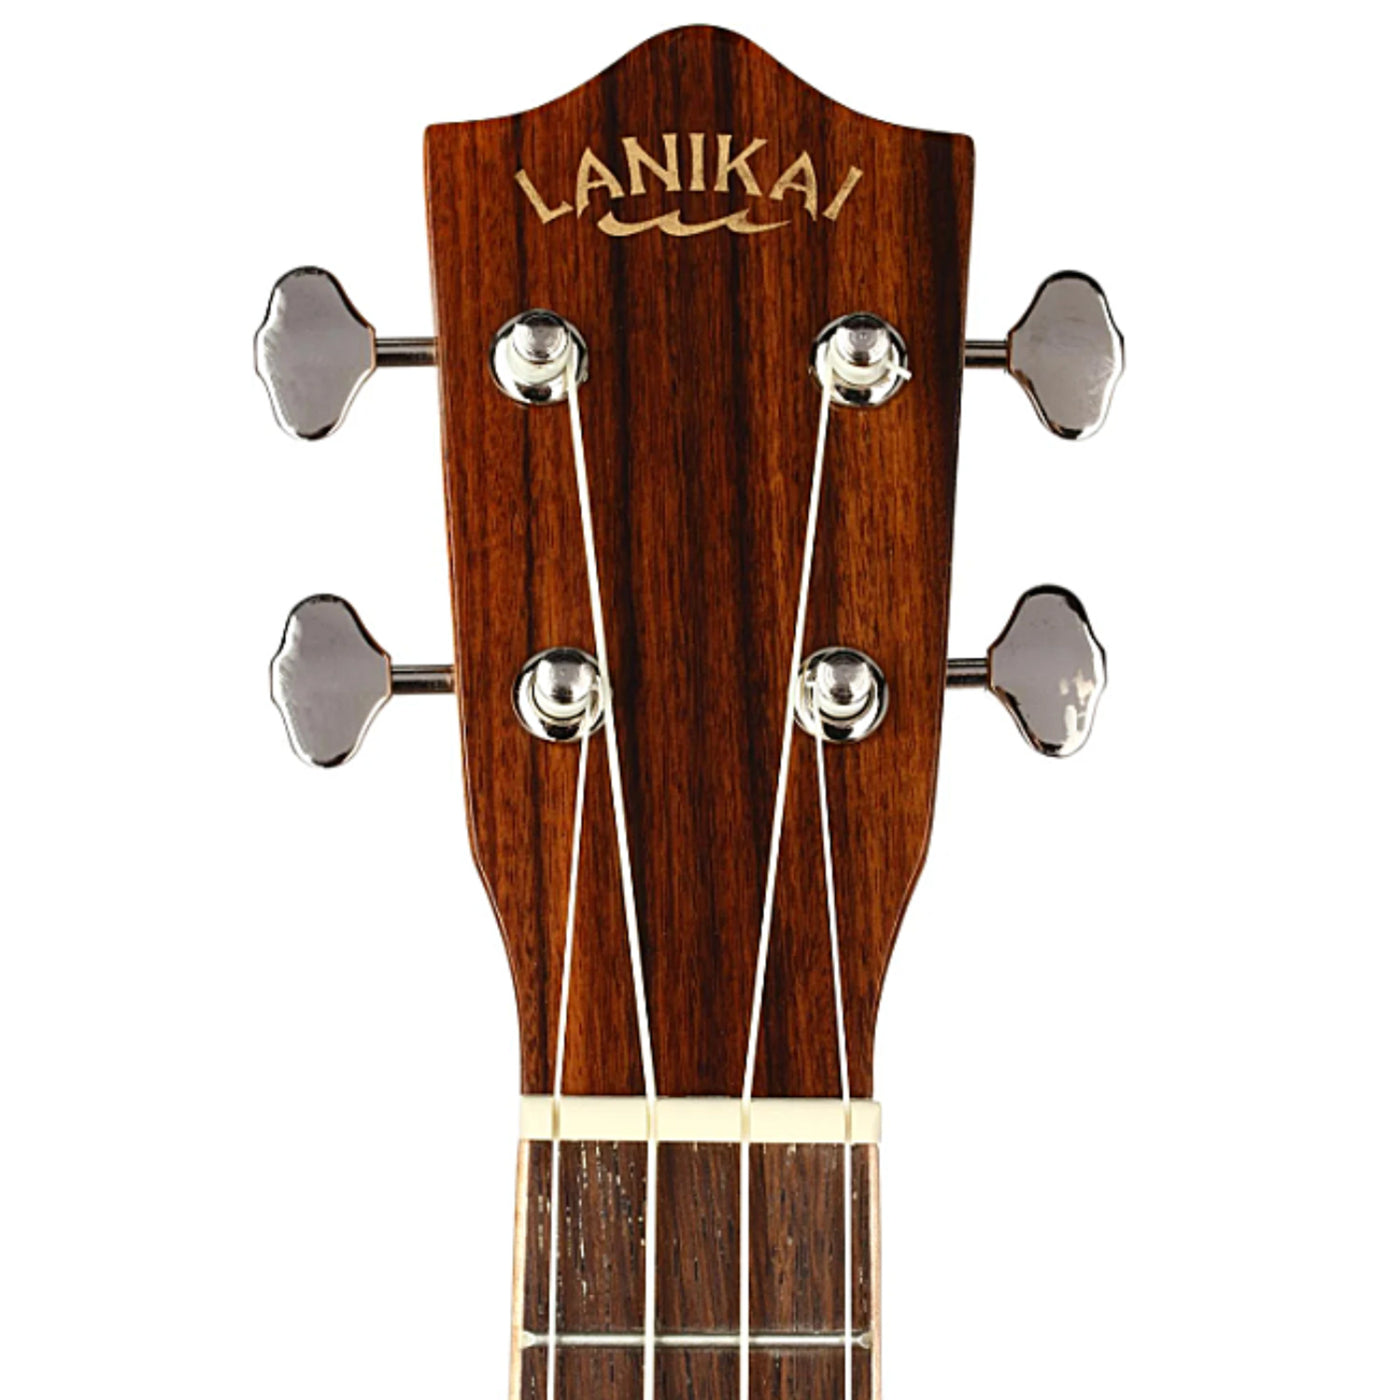 Lanikai MRS-CEC 4 String Ukulele, All Solid Morado Concert Cutaway Ukulele, Acoustic-Electric Ukulele, Natural